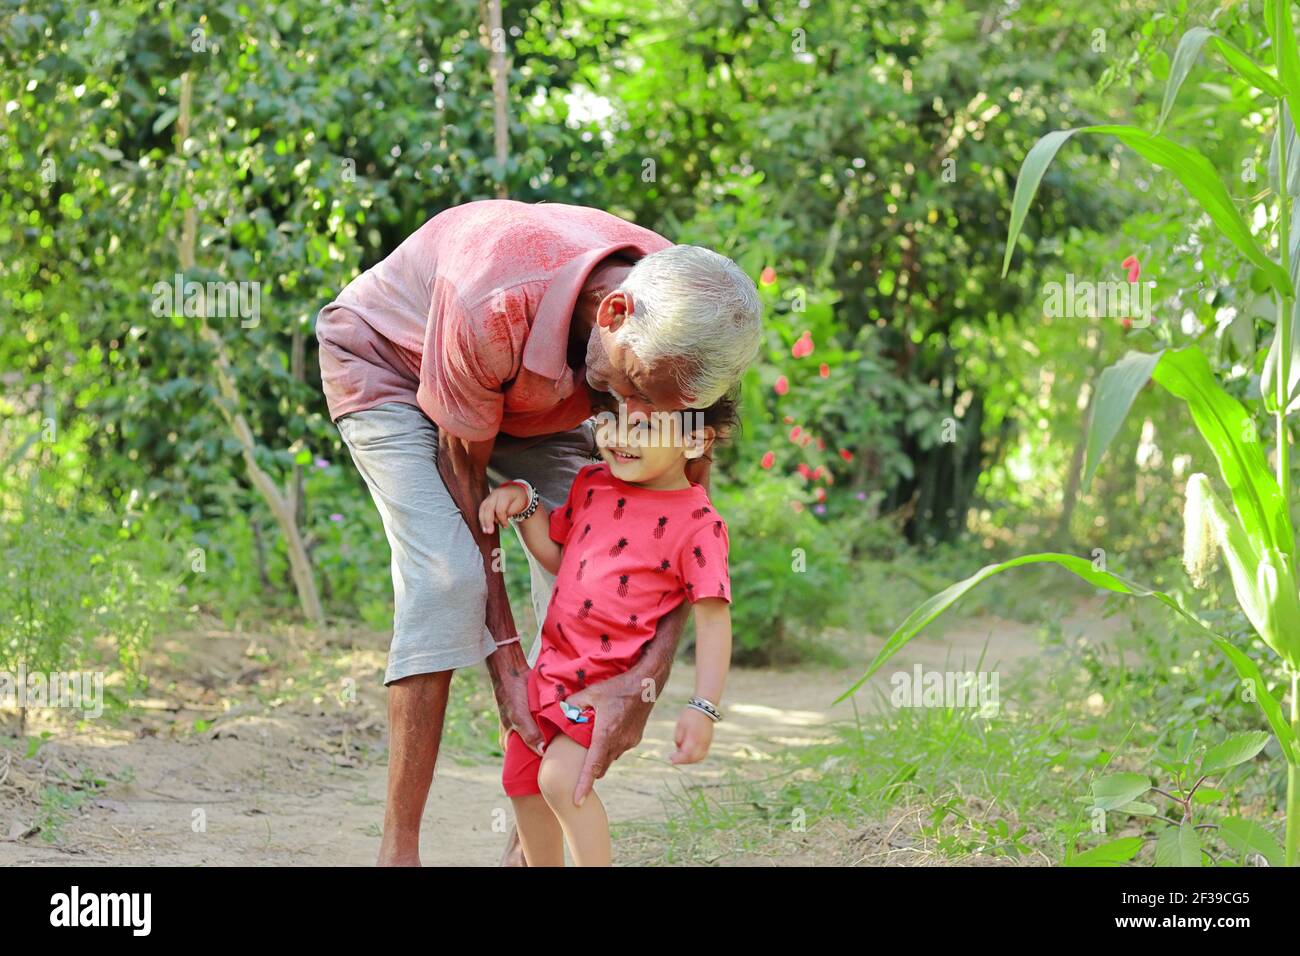 Nonno anziano di origine indiana che tiene amorevolmente il nipote più giovane, india. Concetto per i ricordi dell'Infanzia, sorride sul volto del bambino piccolo Foto Stock